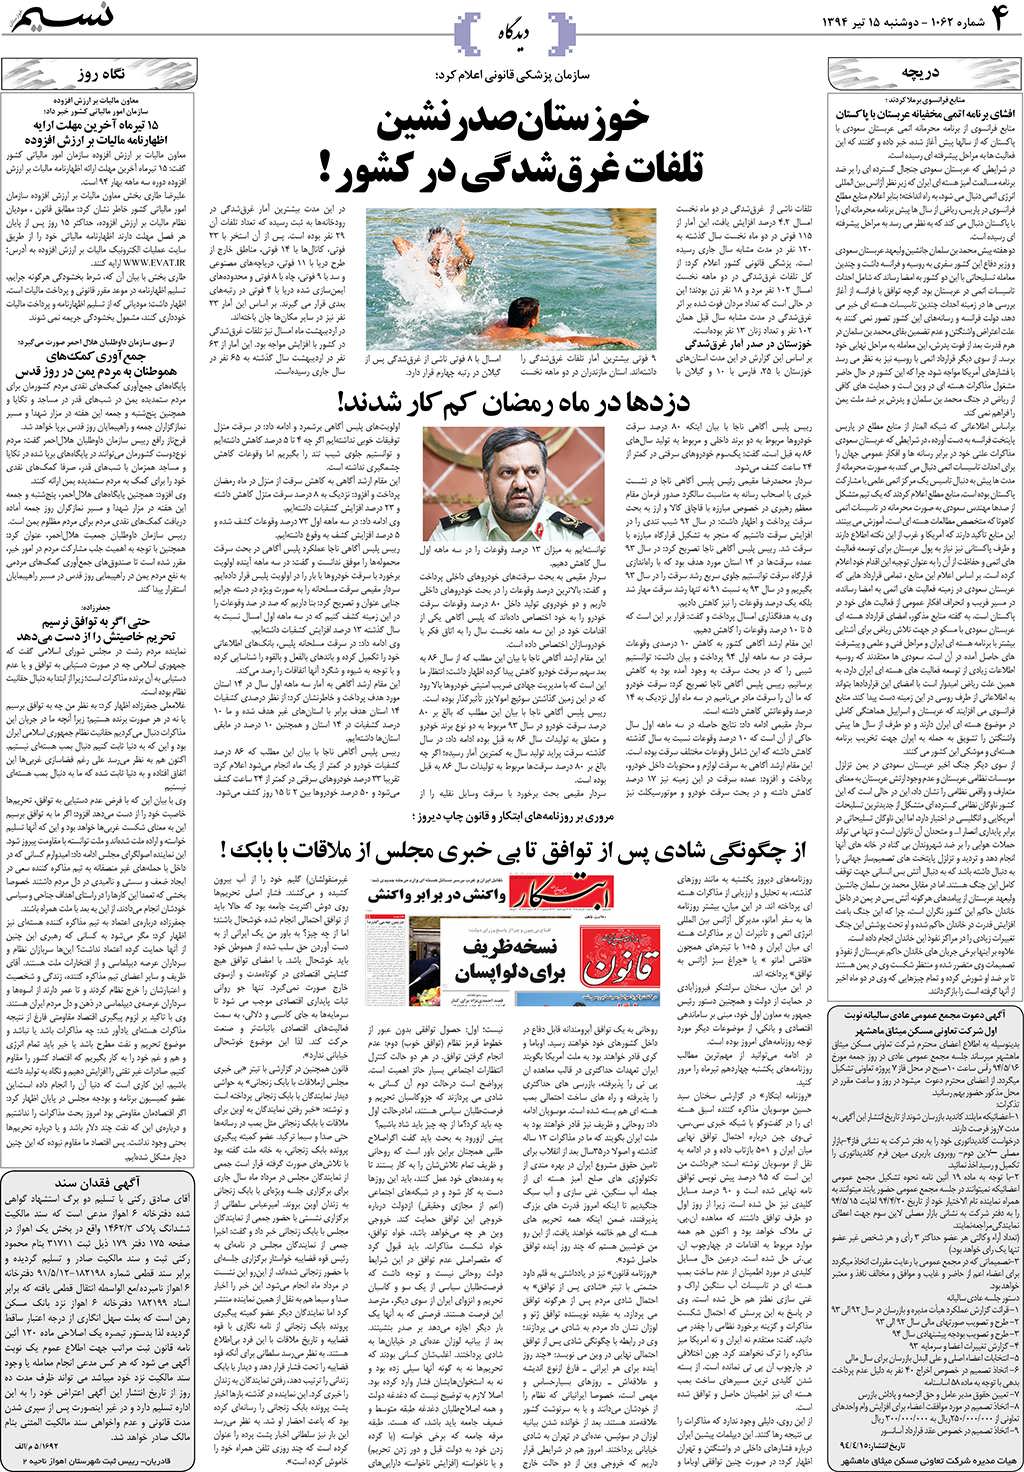 صفحه دیدگاه روزنامه نسیم شماره 1062